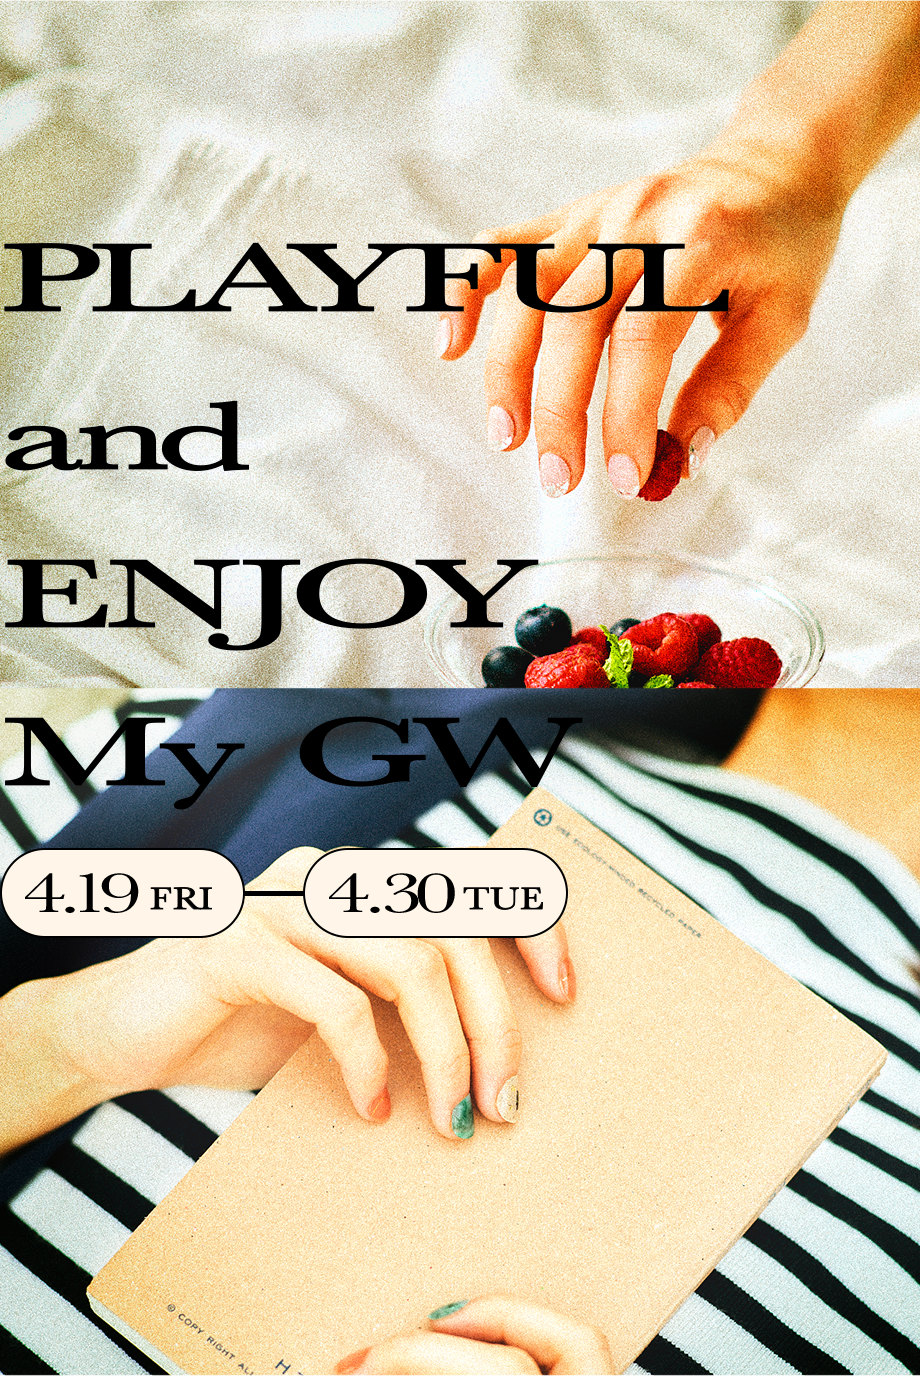 PLAYFUL and ENJOY My GW 4.19FRI-4.30TUE